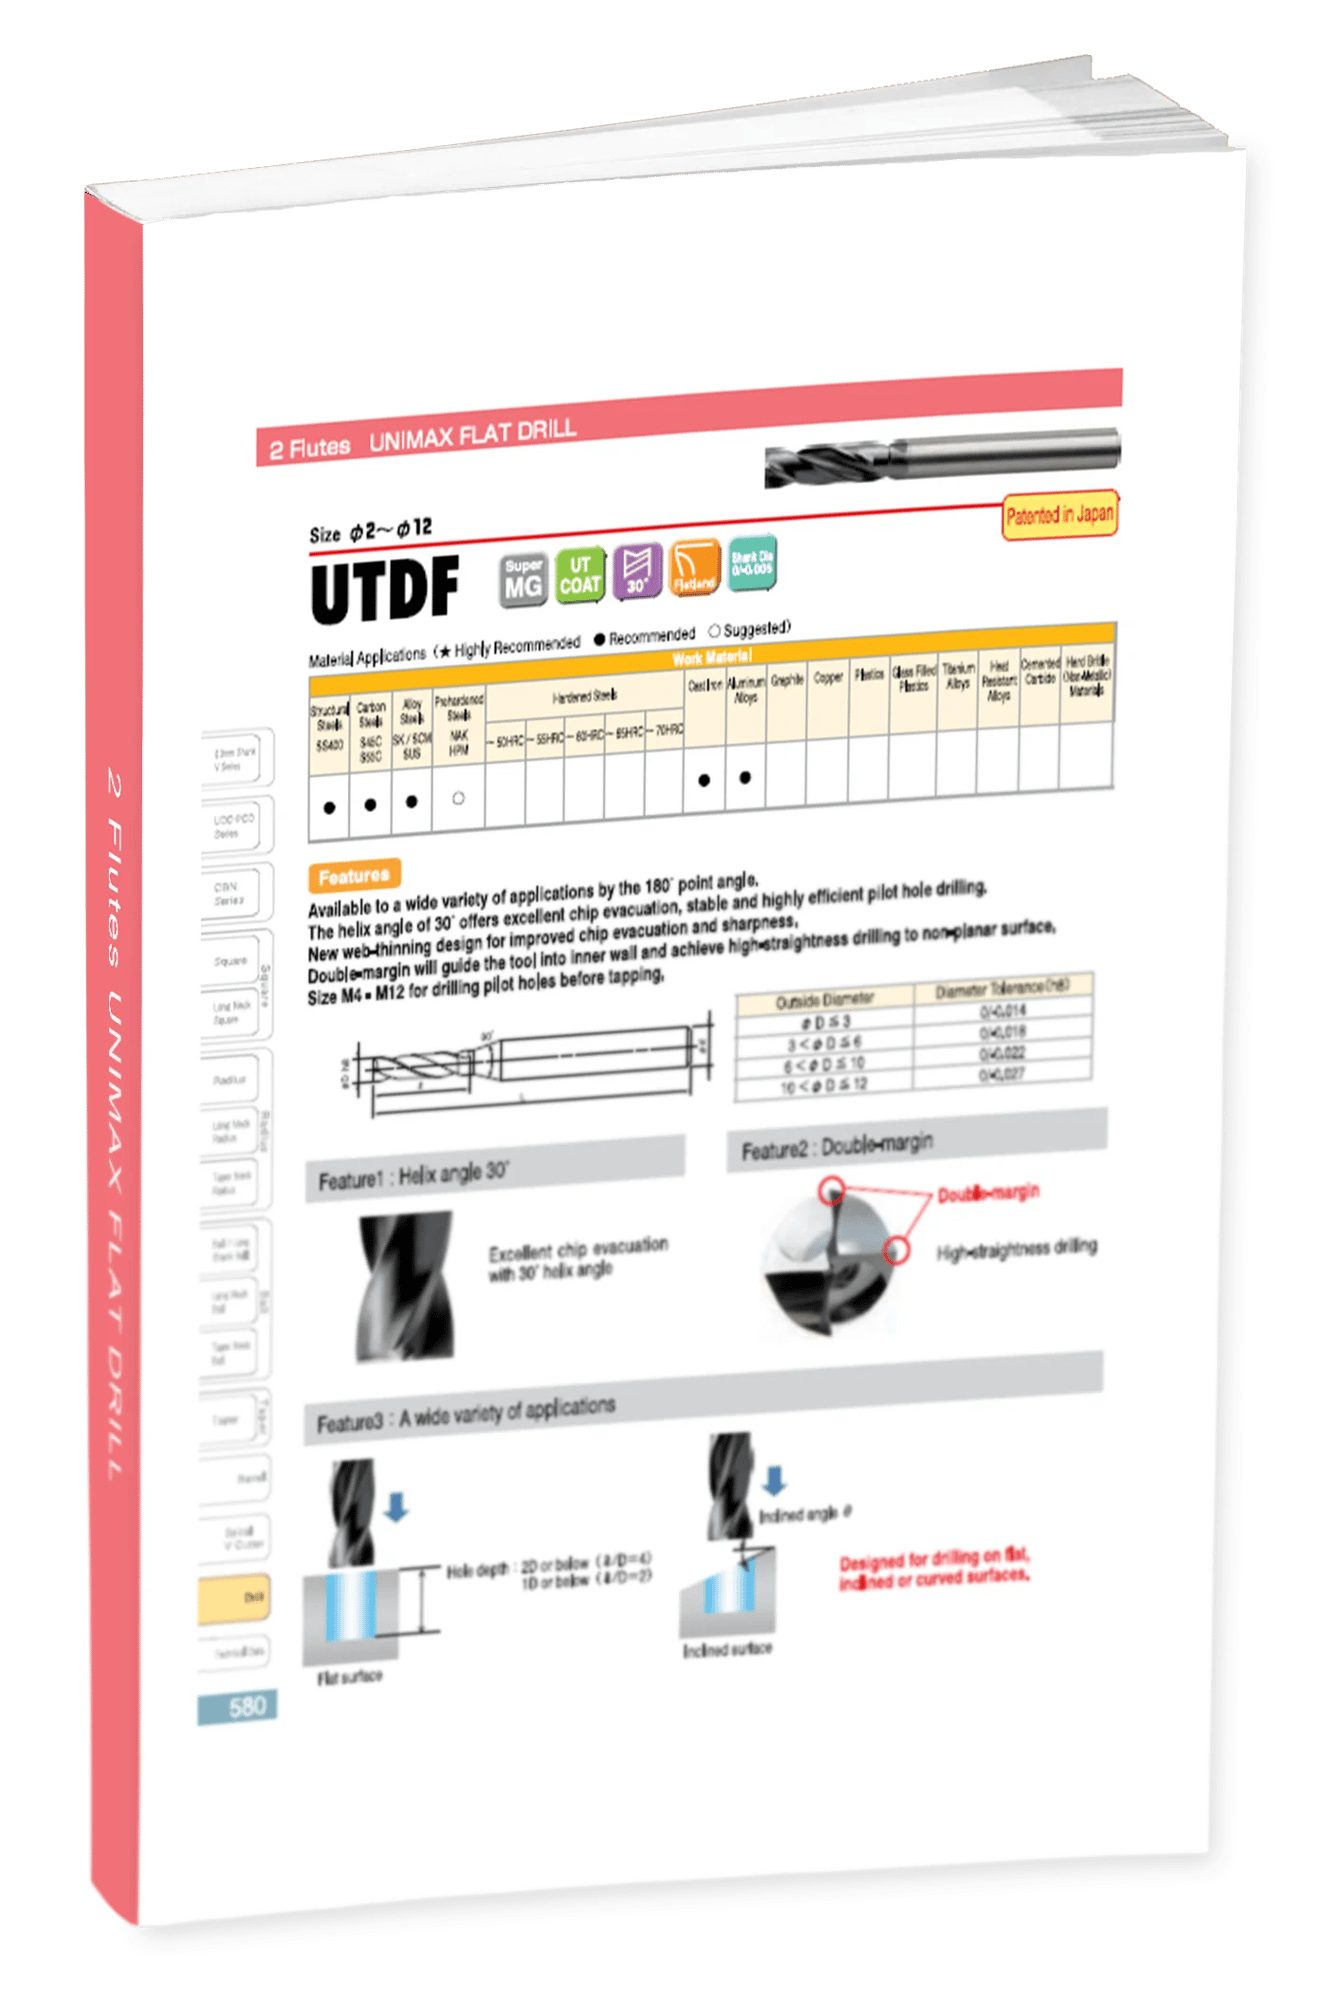 UTDF 2 Flute Square Drill Vol 21